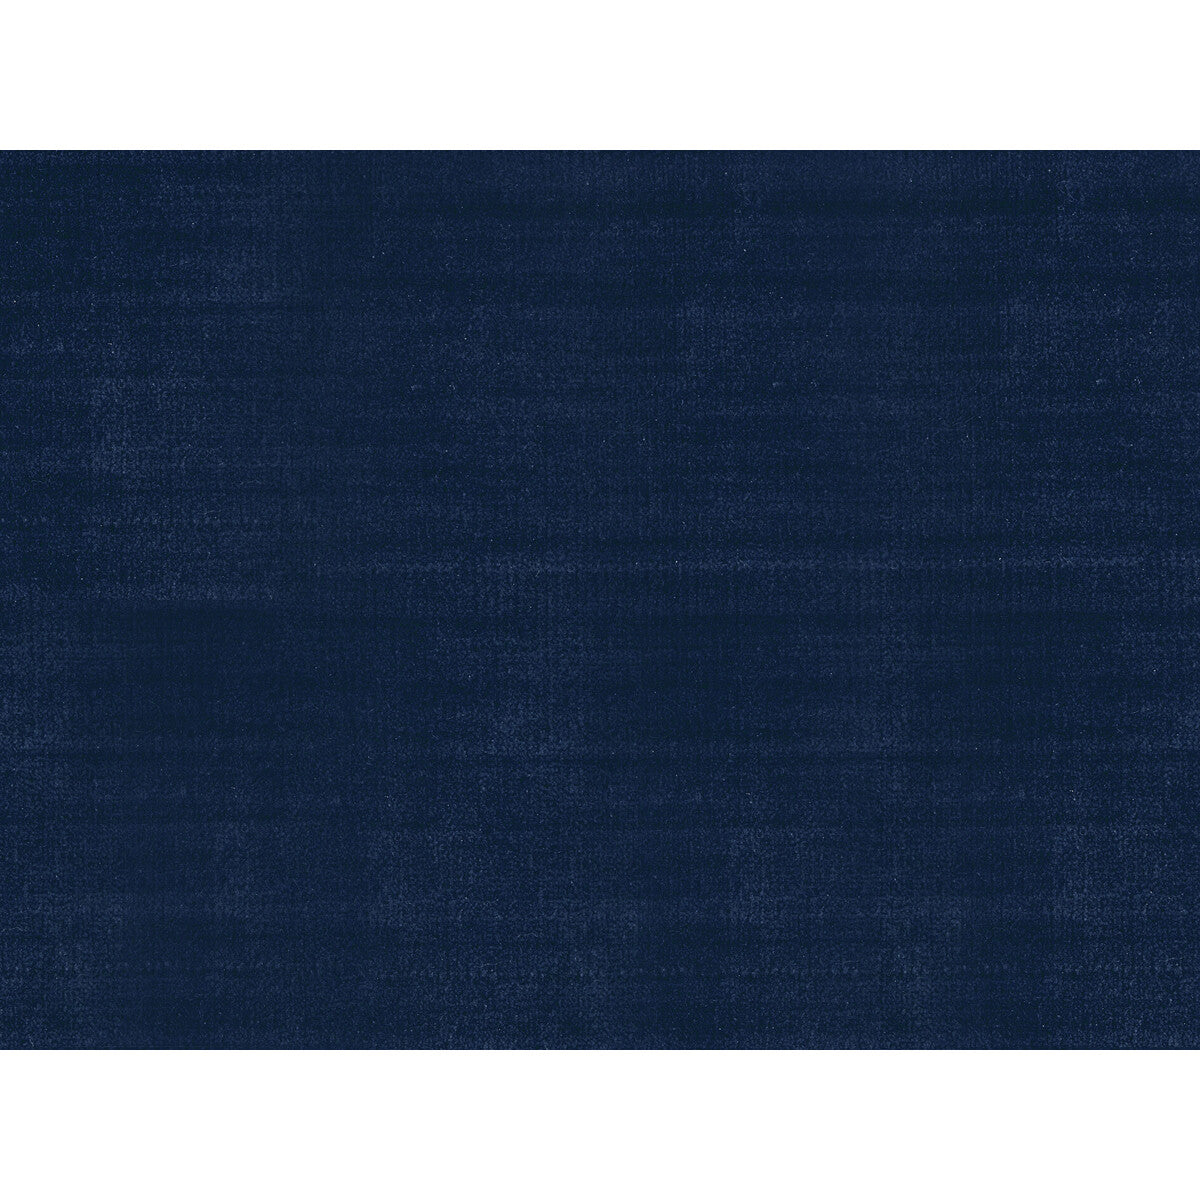 St fabric in florent silk velvet navy color - pattern BR-89780.285.0 - by Brunschwig &amp; Fils